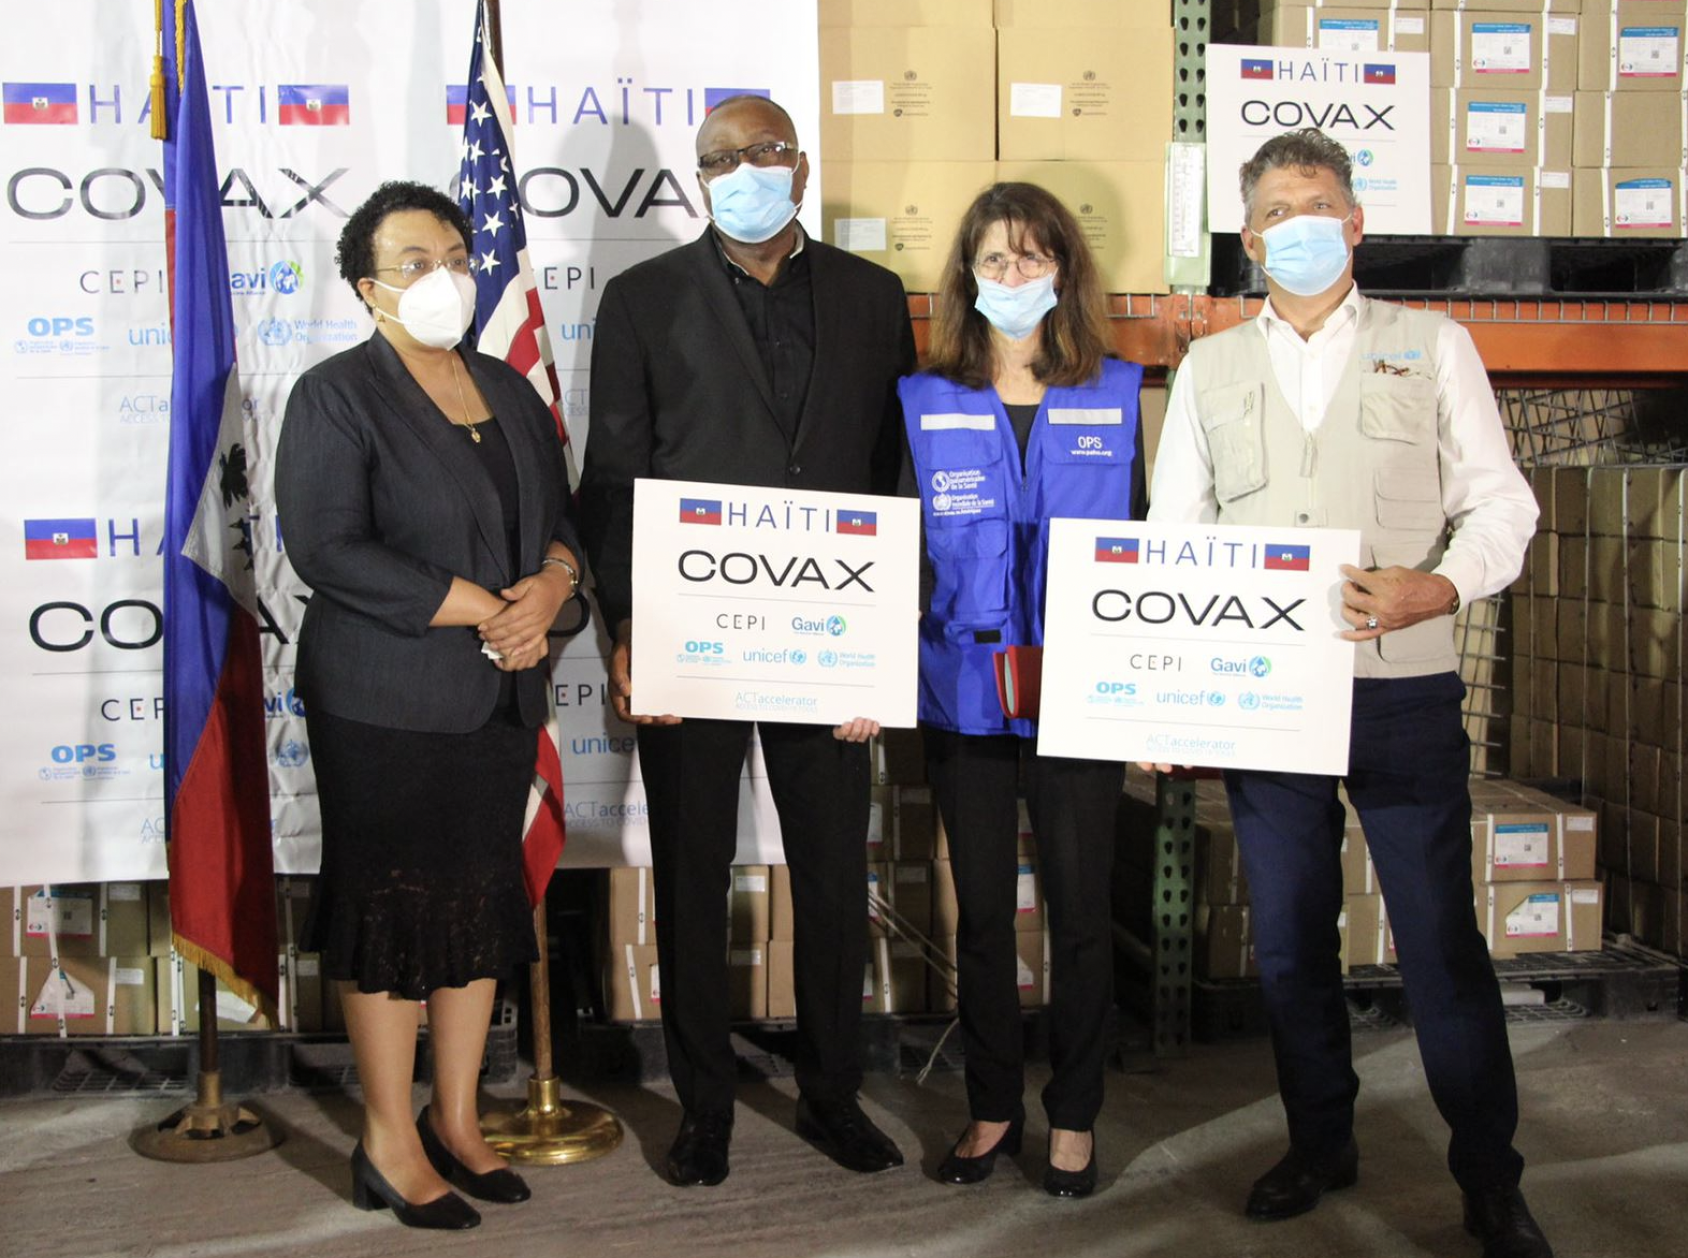 四个人在海地和美国国旗前举着COVAX标志。